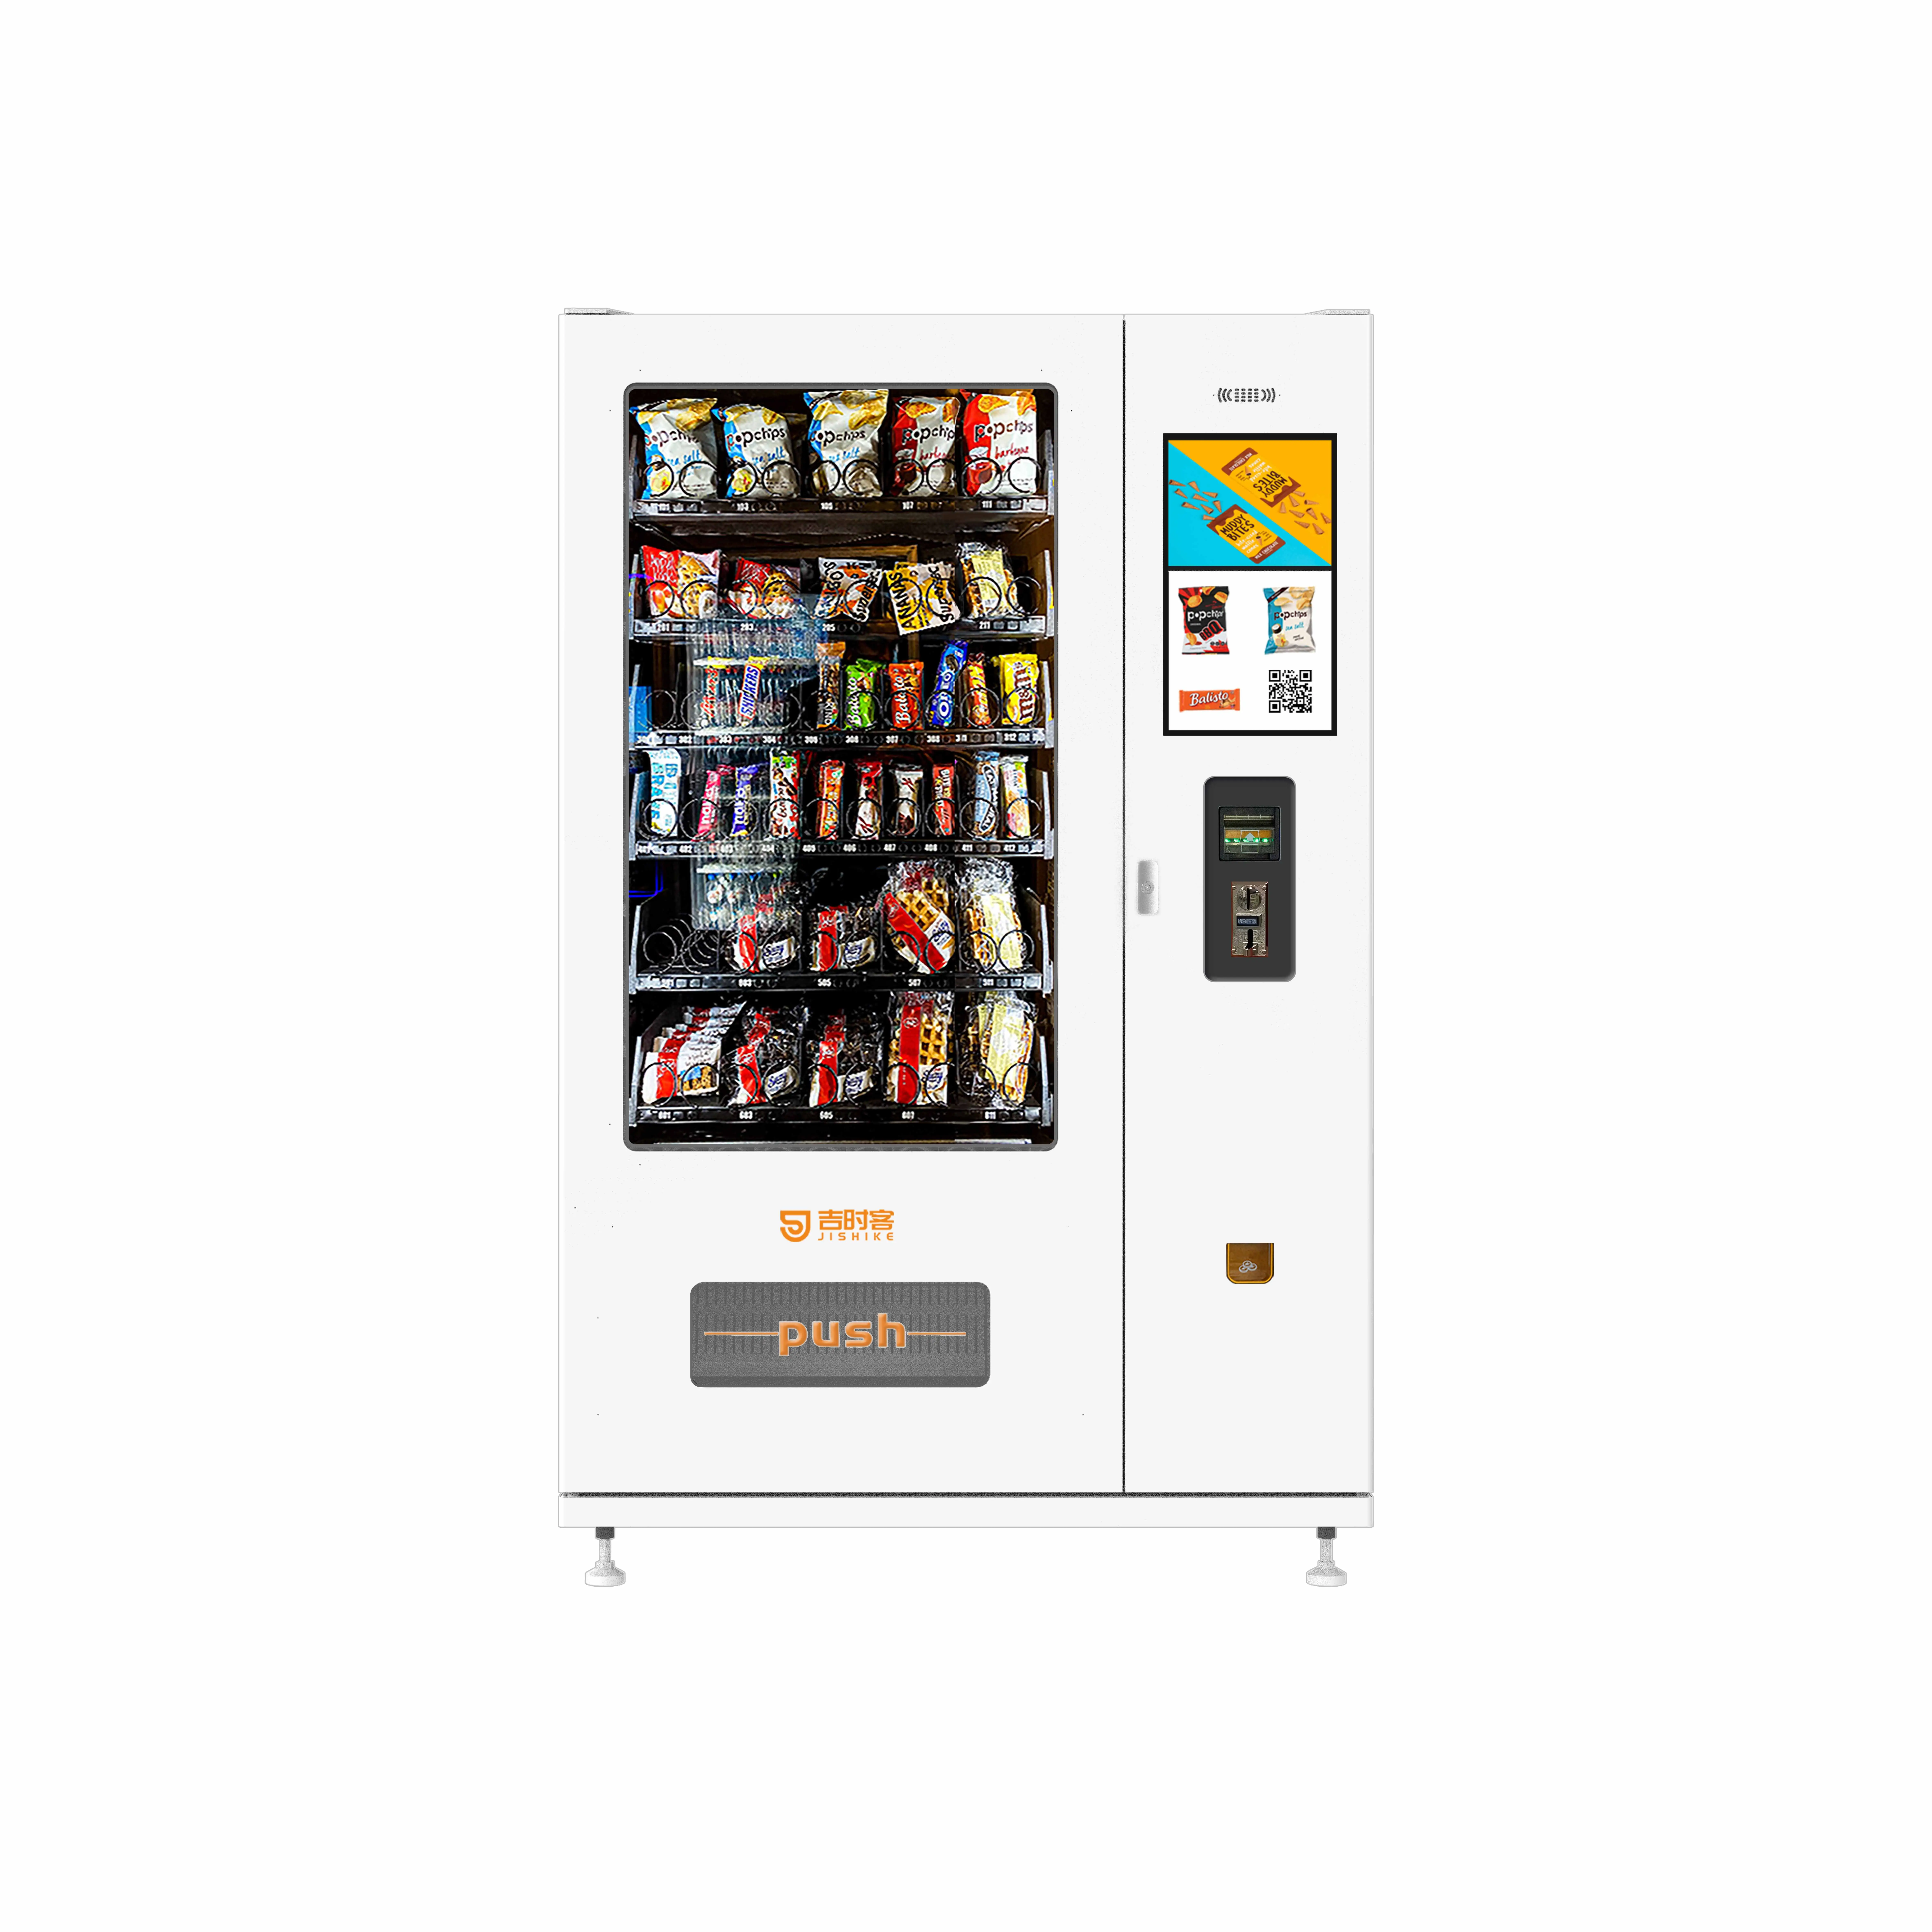 JSK toptancı otomatik şeker satış makinesi otomat ile kart okuyucu